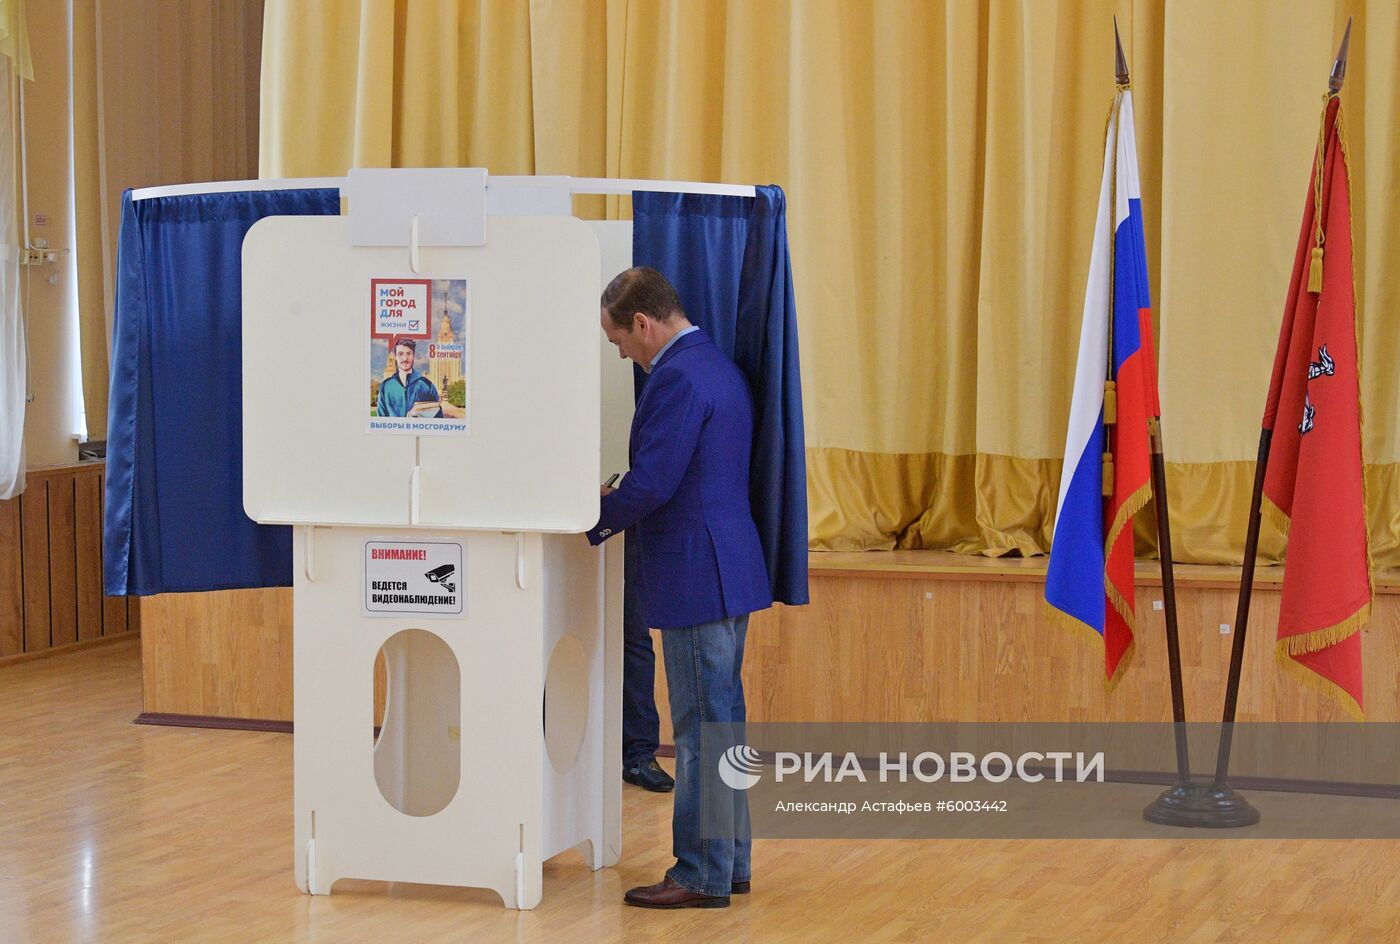 Премьер-министр РФ Д. Медведев принял участие в голосовании на выборах депутатов Мосгордумы